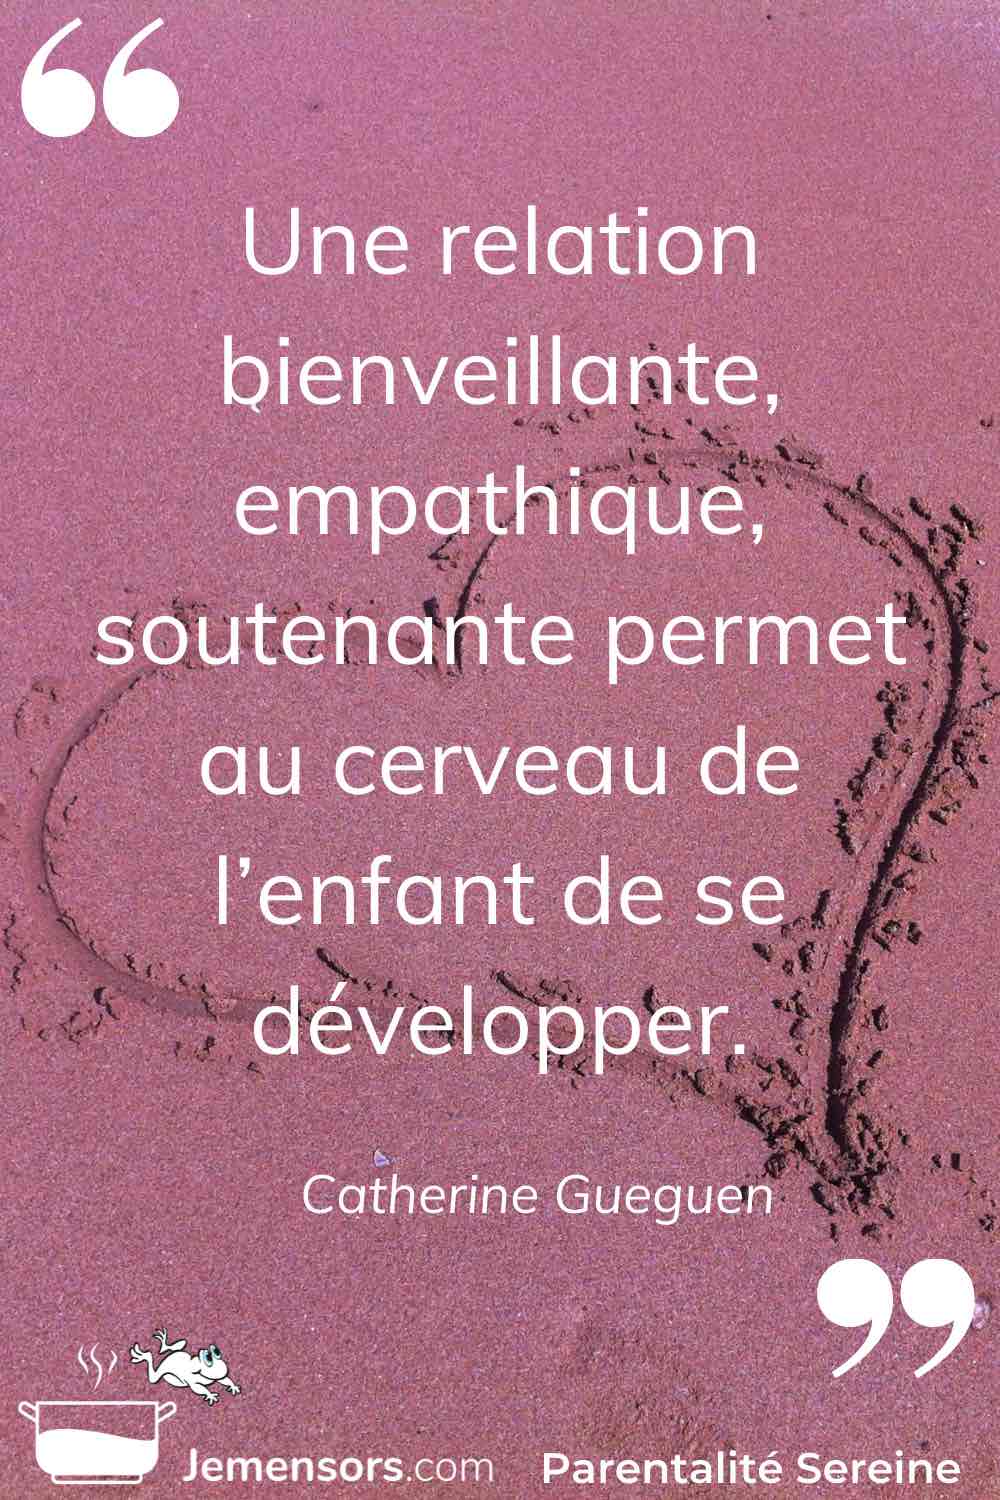 "Une relation bienveillante, empathique, soutenante permet au cerveau de l’enfant de se développer." Catherine Gueguen 